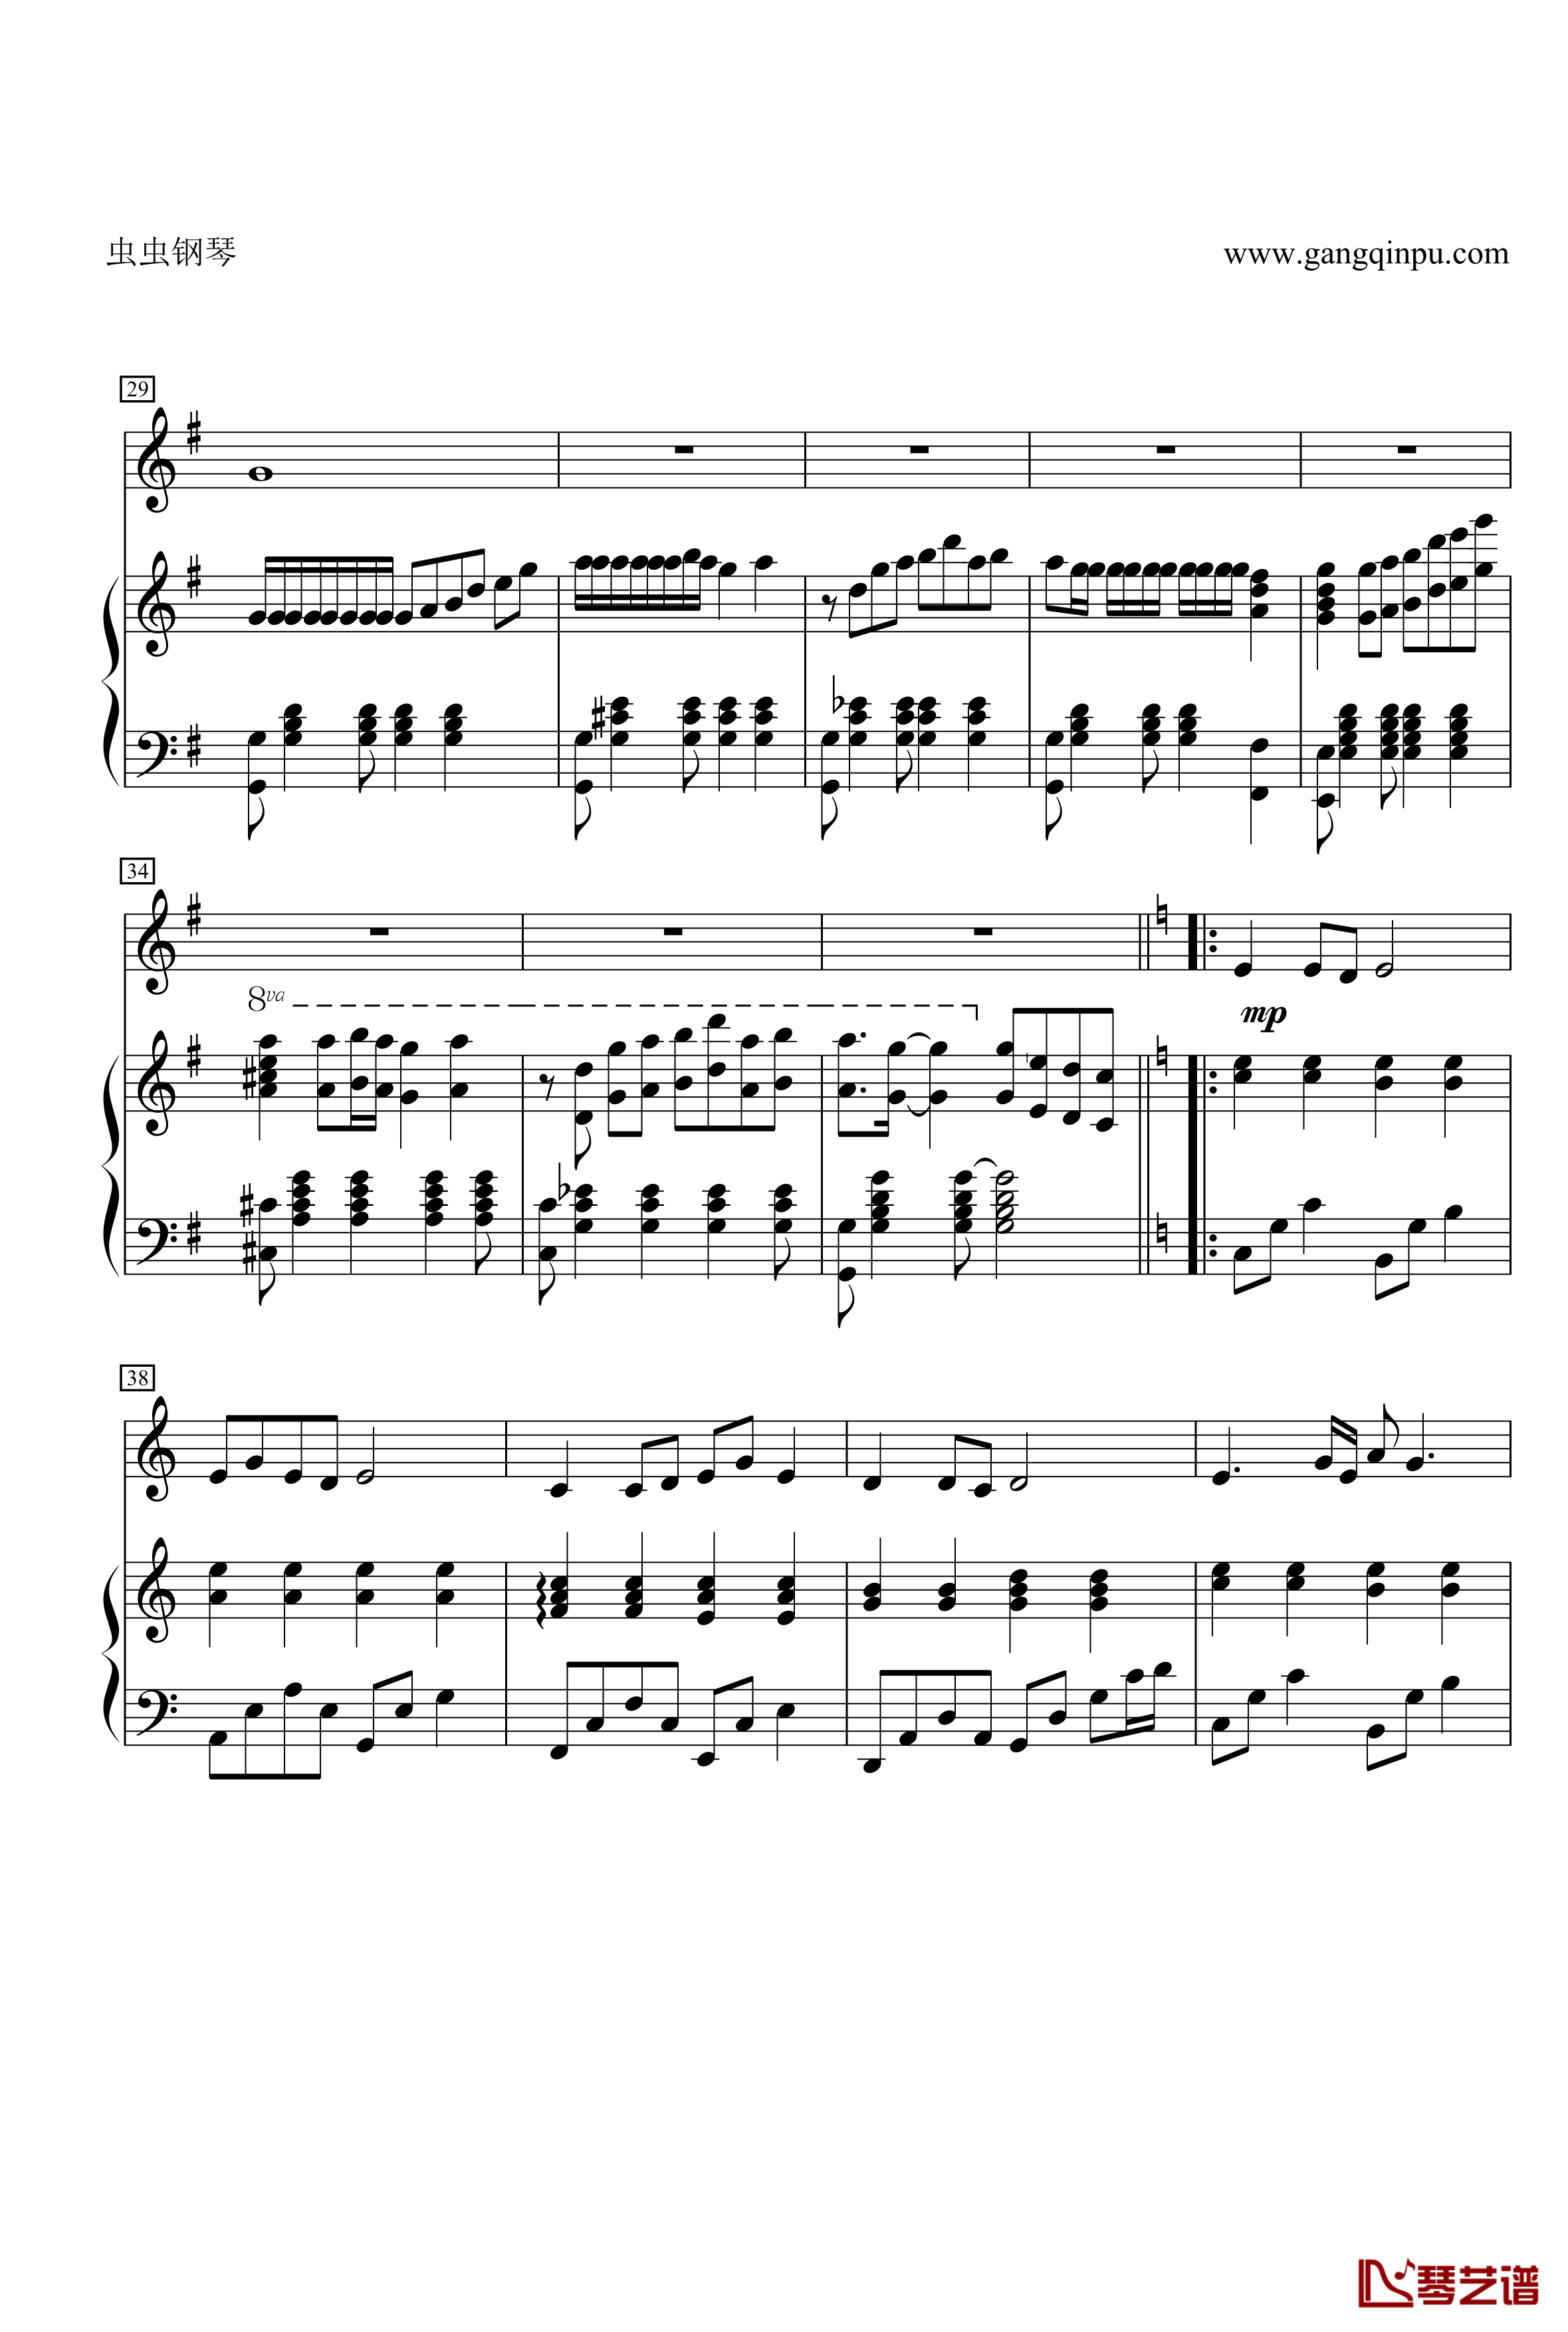 菊花台钢琴谱-二胡对话大提琴 钢琴 总谱-周杰伦3